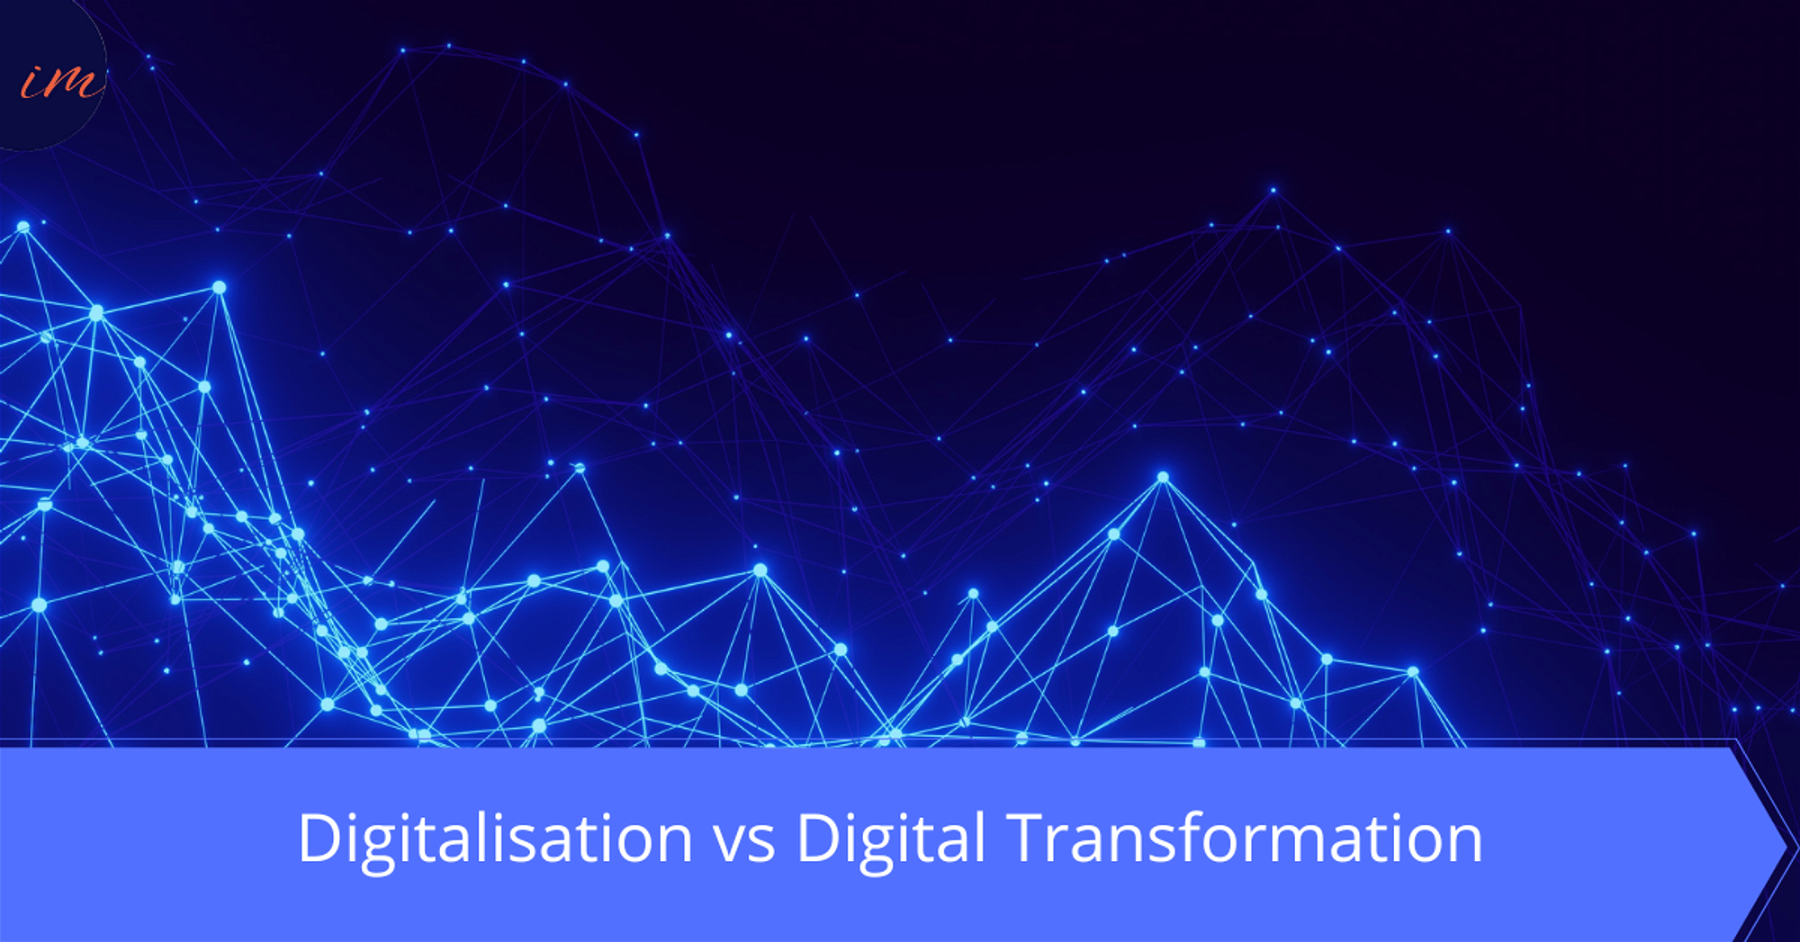 Digital Transformation vs Digitalisation